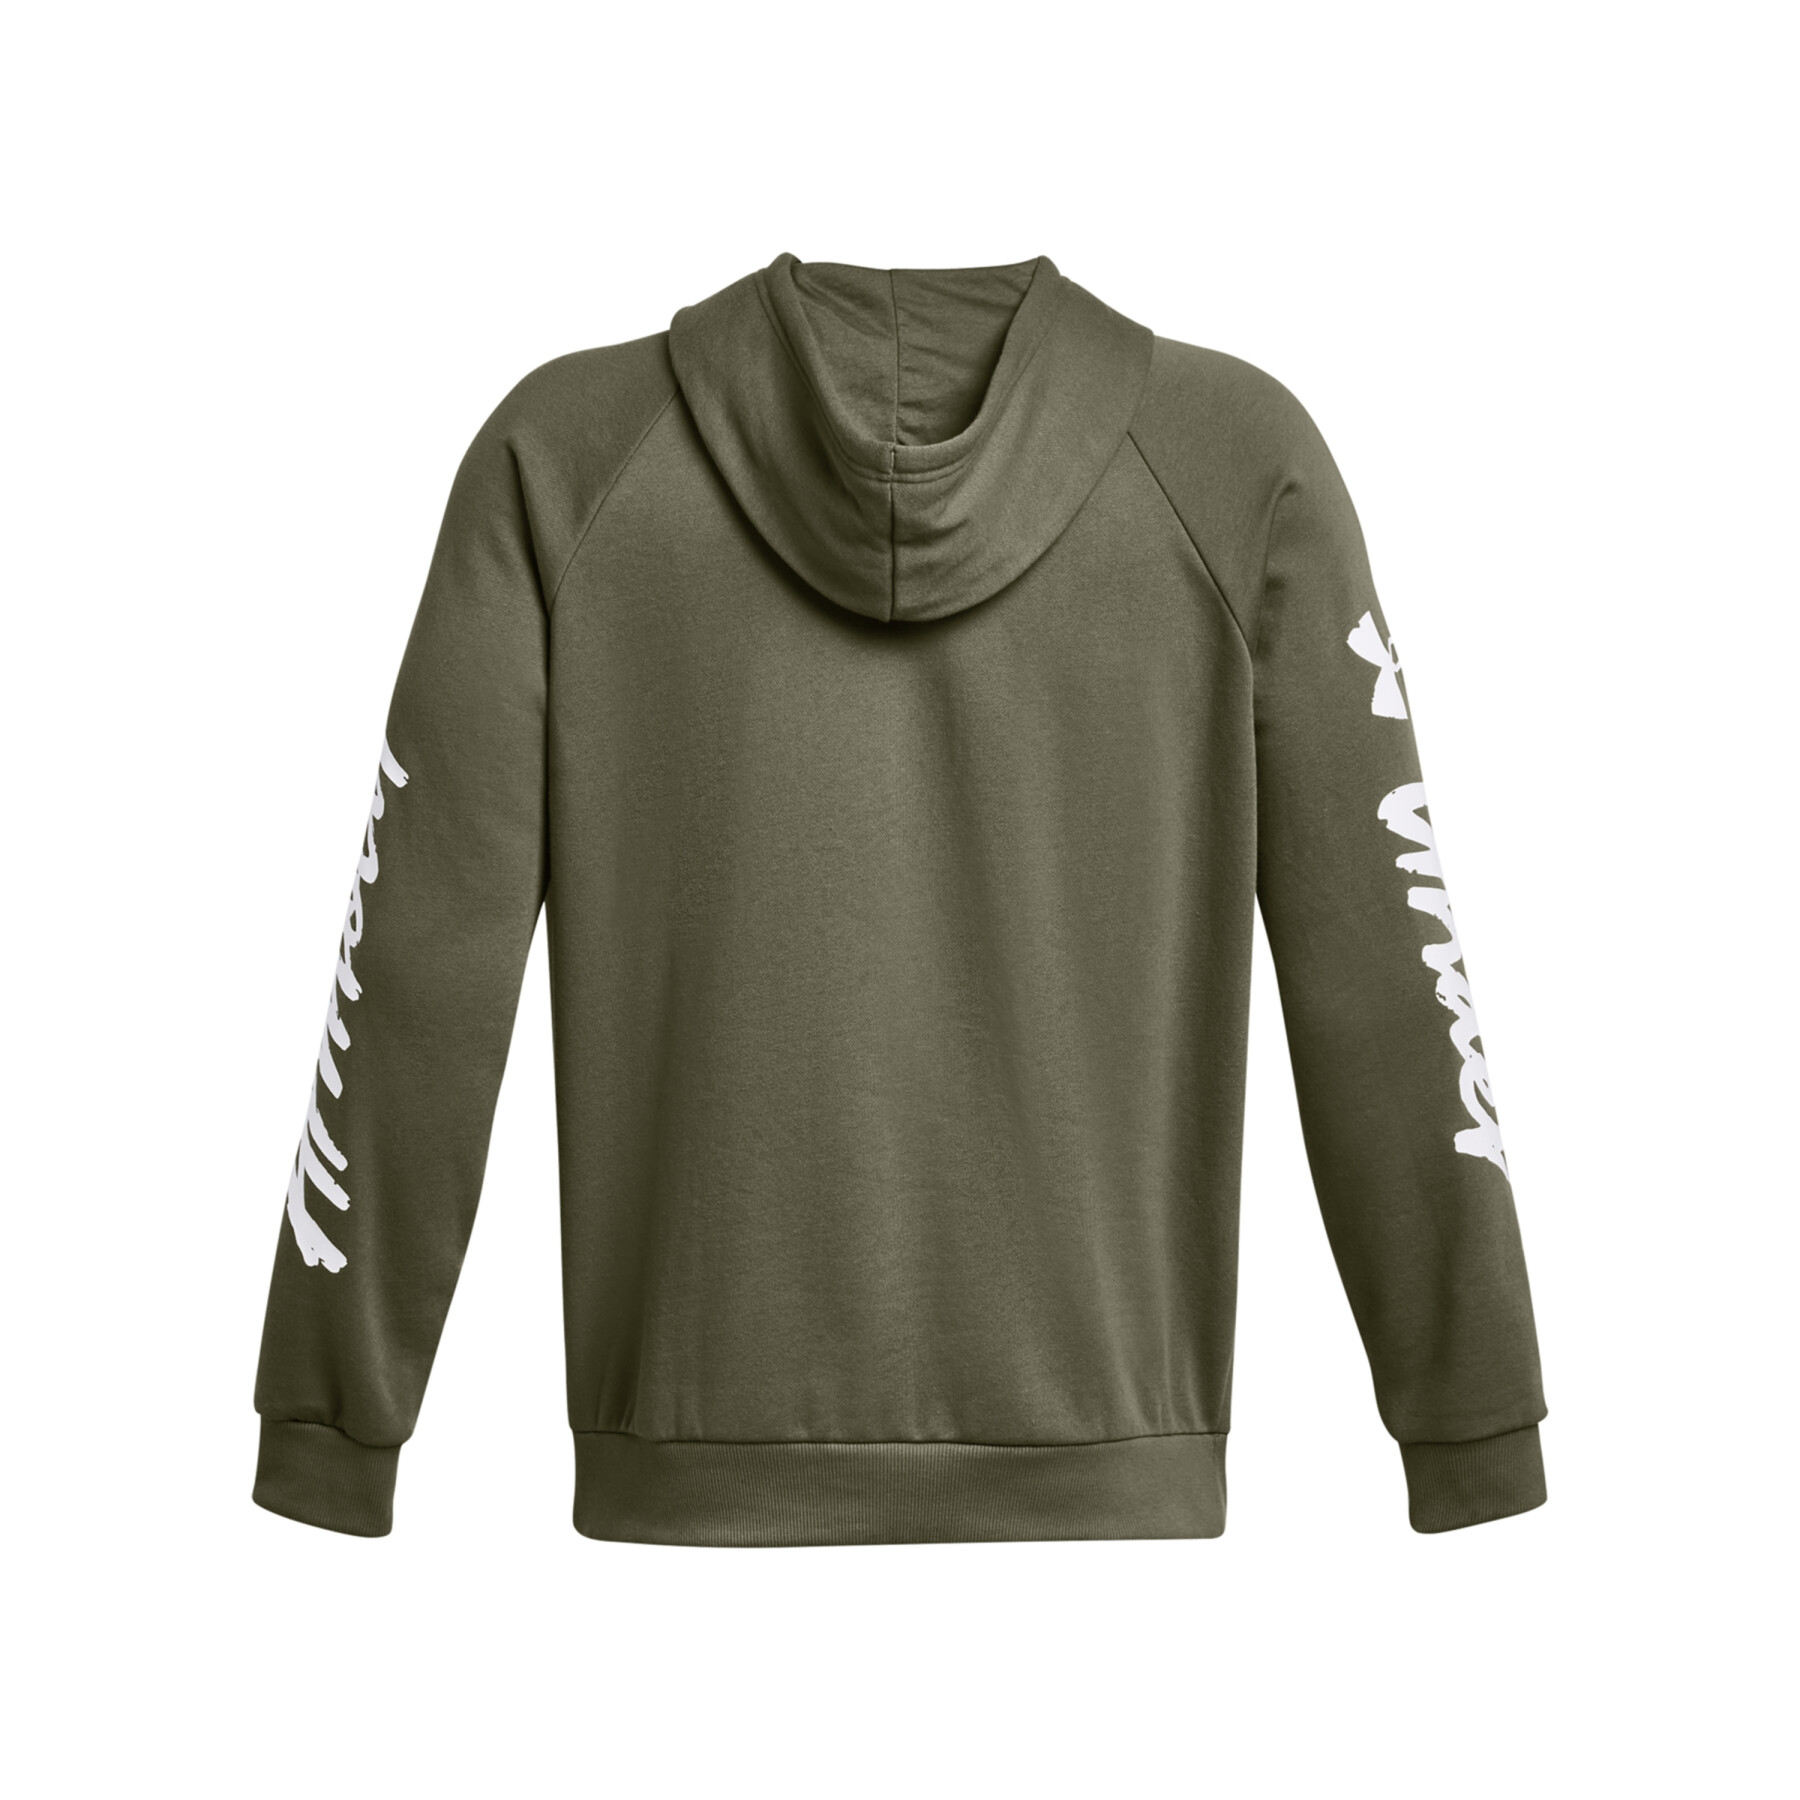 Sweatshirt à capuche Under Armour Rival Fleece Graphic